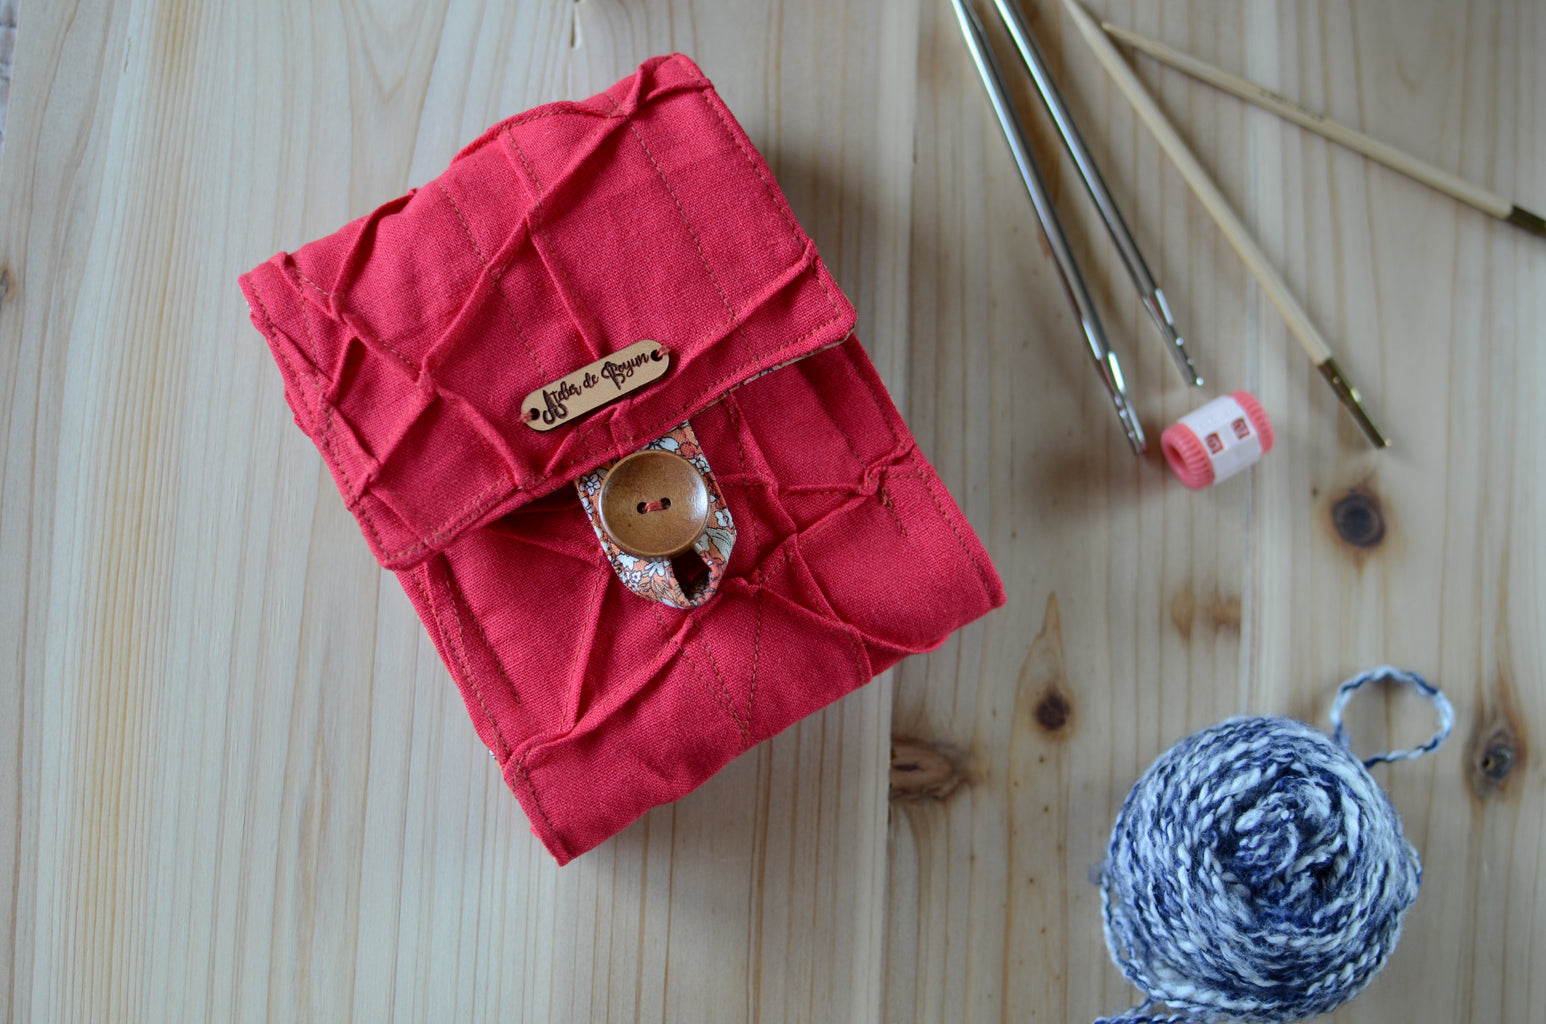 Roadtrip knitting needle case for travel knitters - Atelier de Soyun